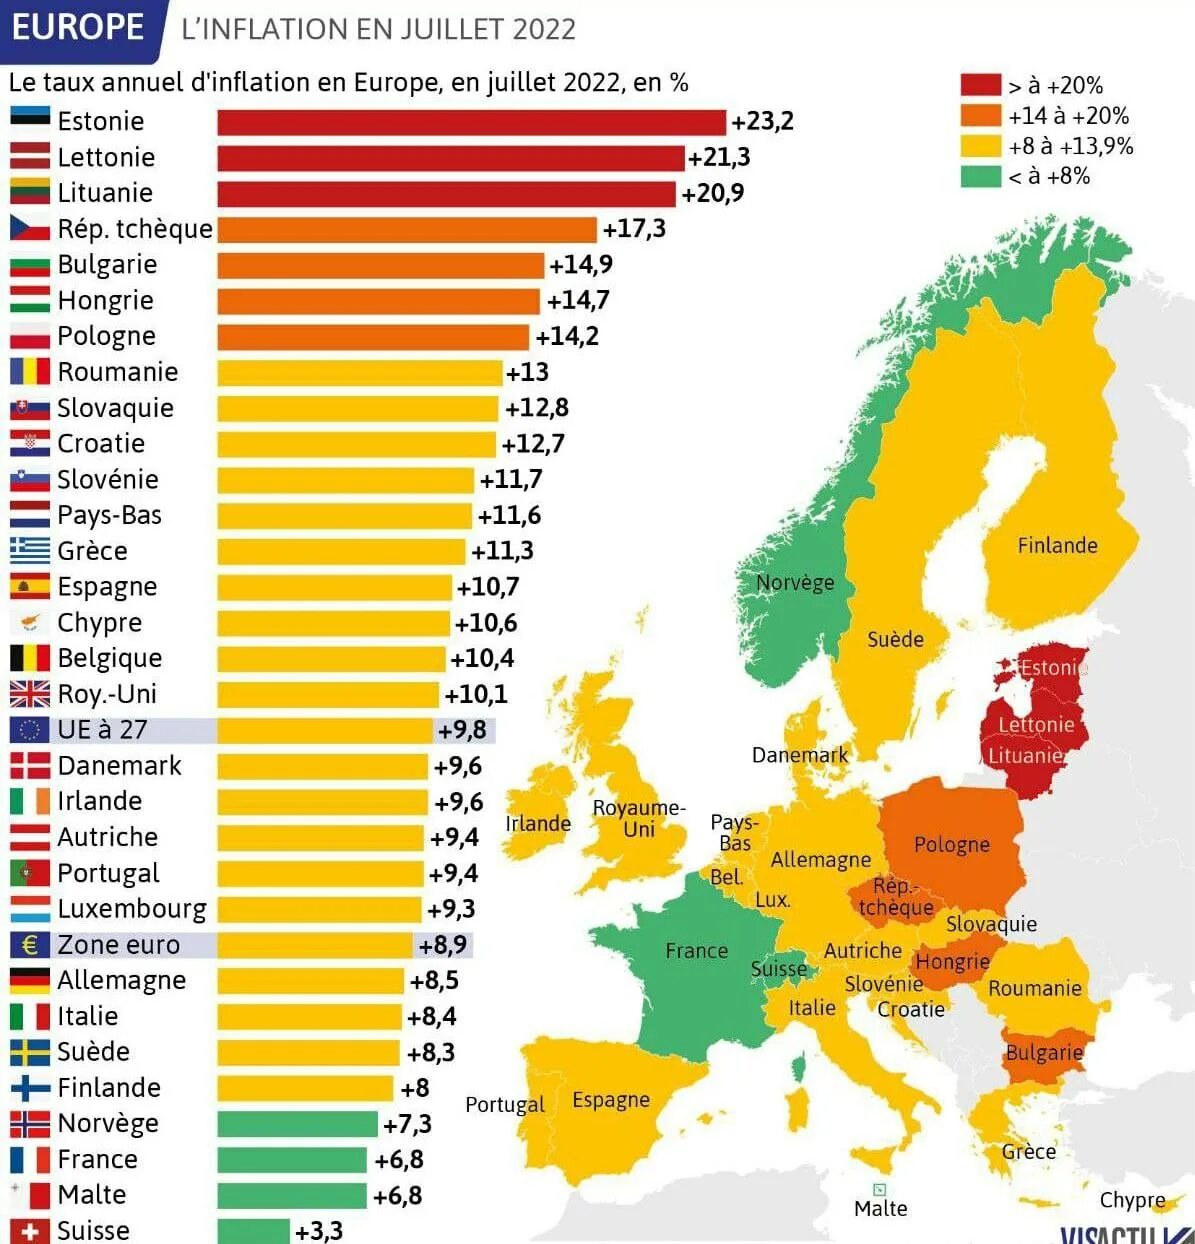 Сколько европейских стран в мире. Инфляция по странам Евросоюза. Количество европейских стран. Инфляция в Европе за 2022. Инфляция в странах Евросоюза за 2022 год.